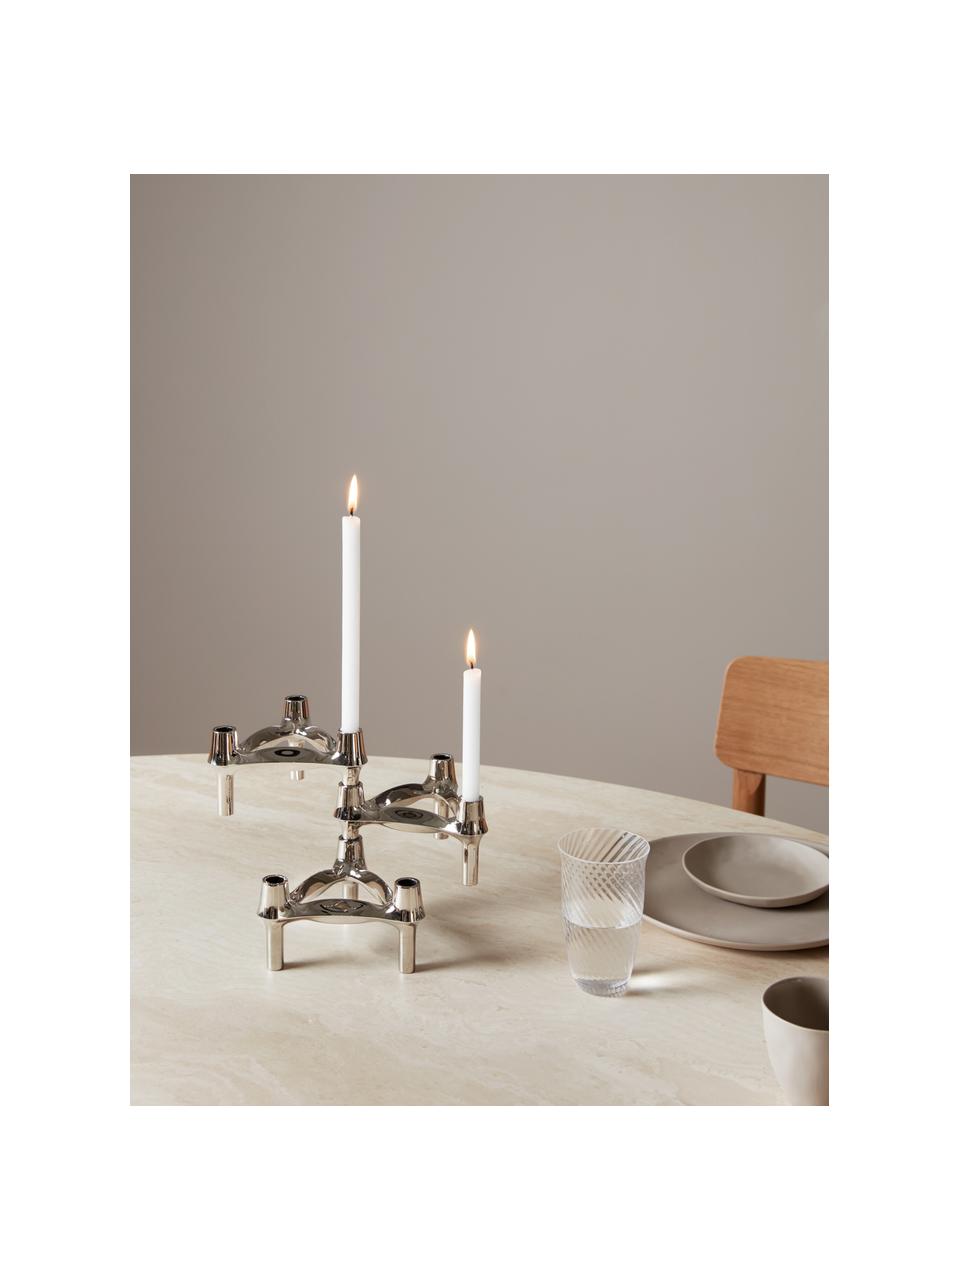 Tenké stolní svíčky Stoff Nagel, 12 ks, Parafínový vosk, Bílá, Ø 1 cm, V 18 cm